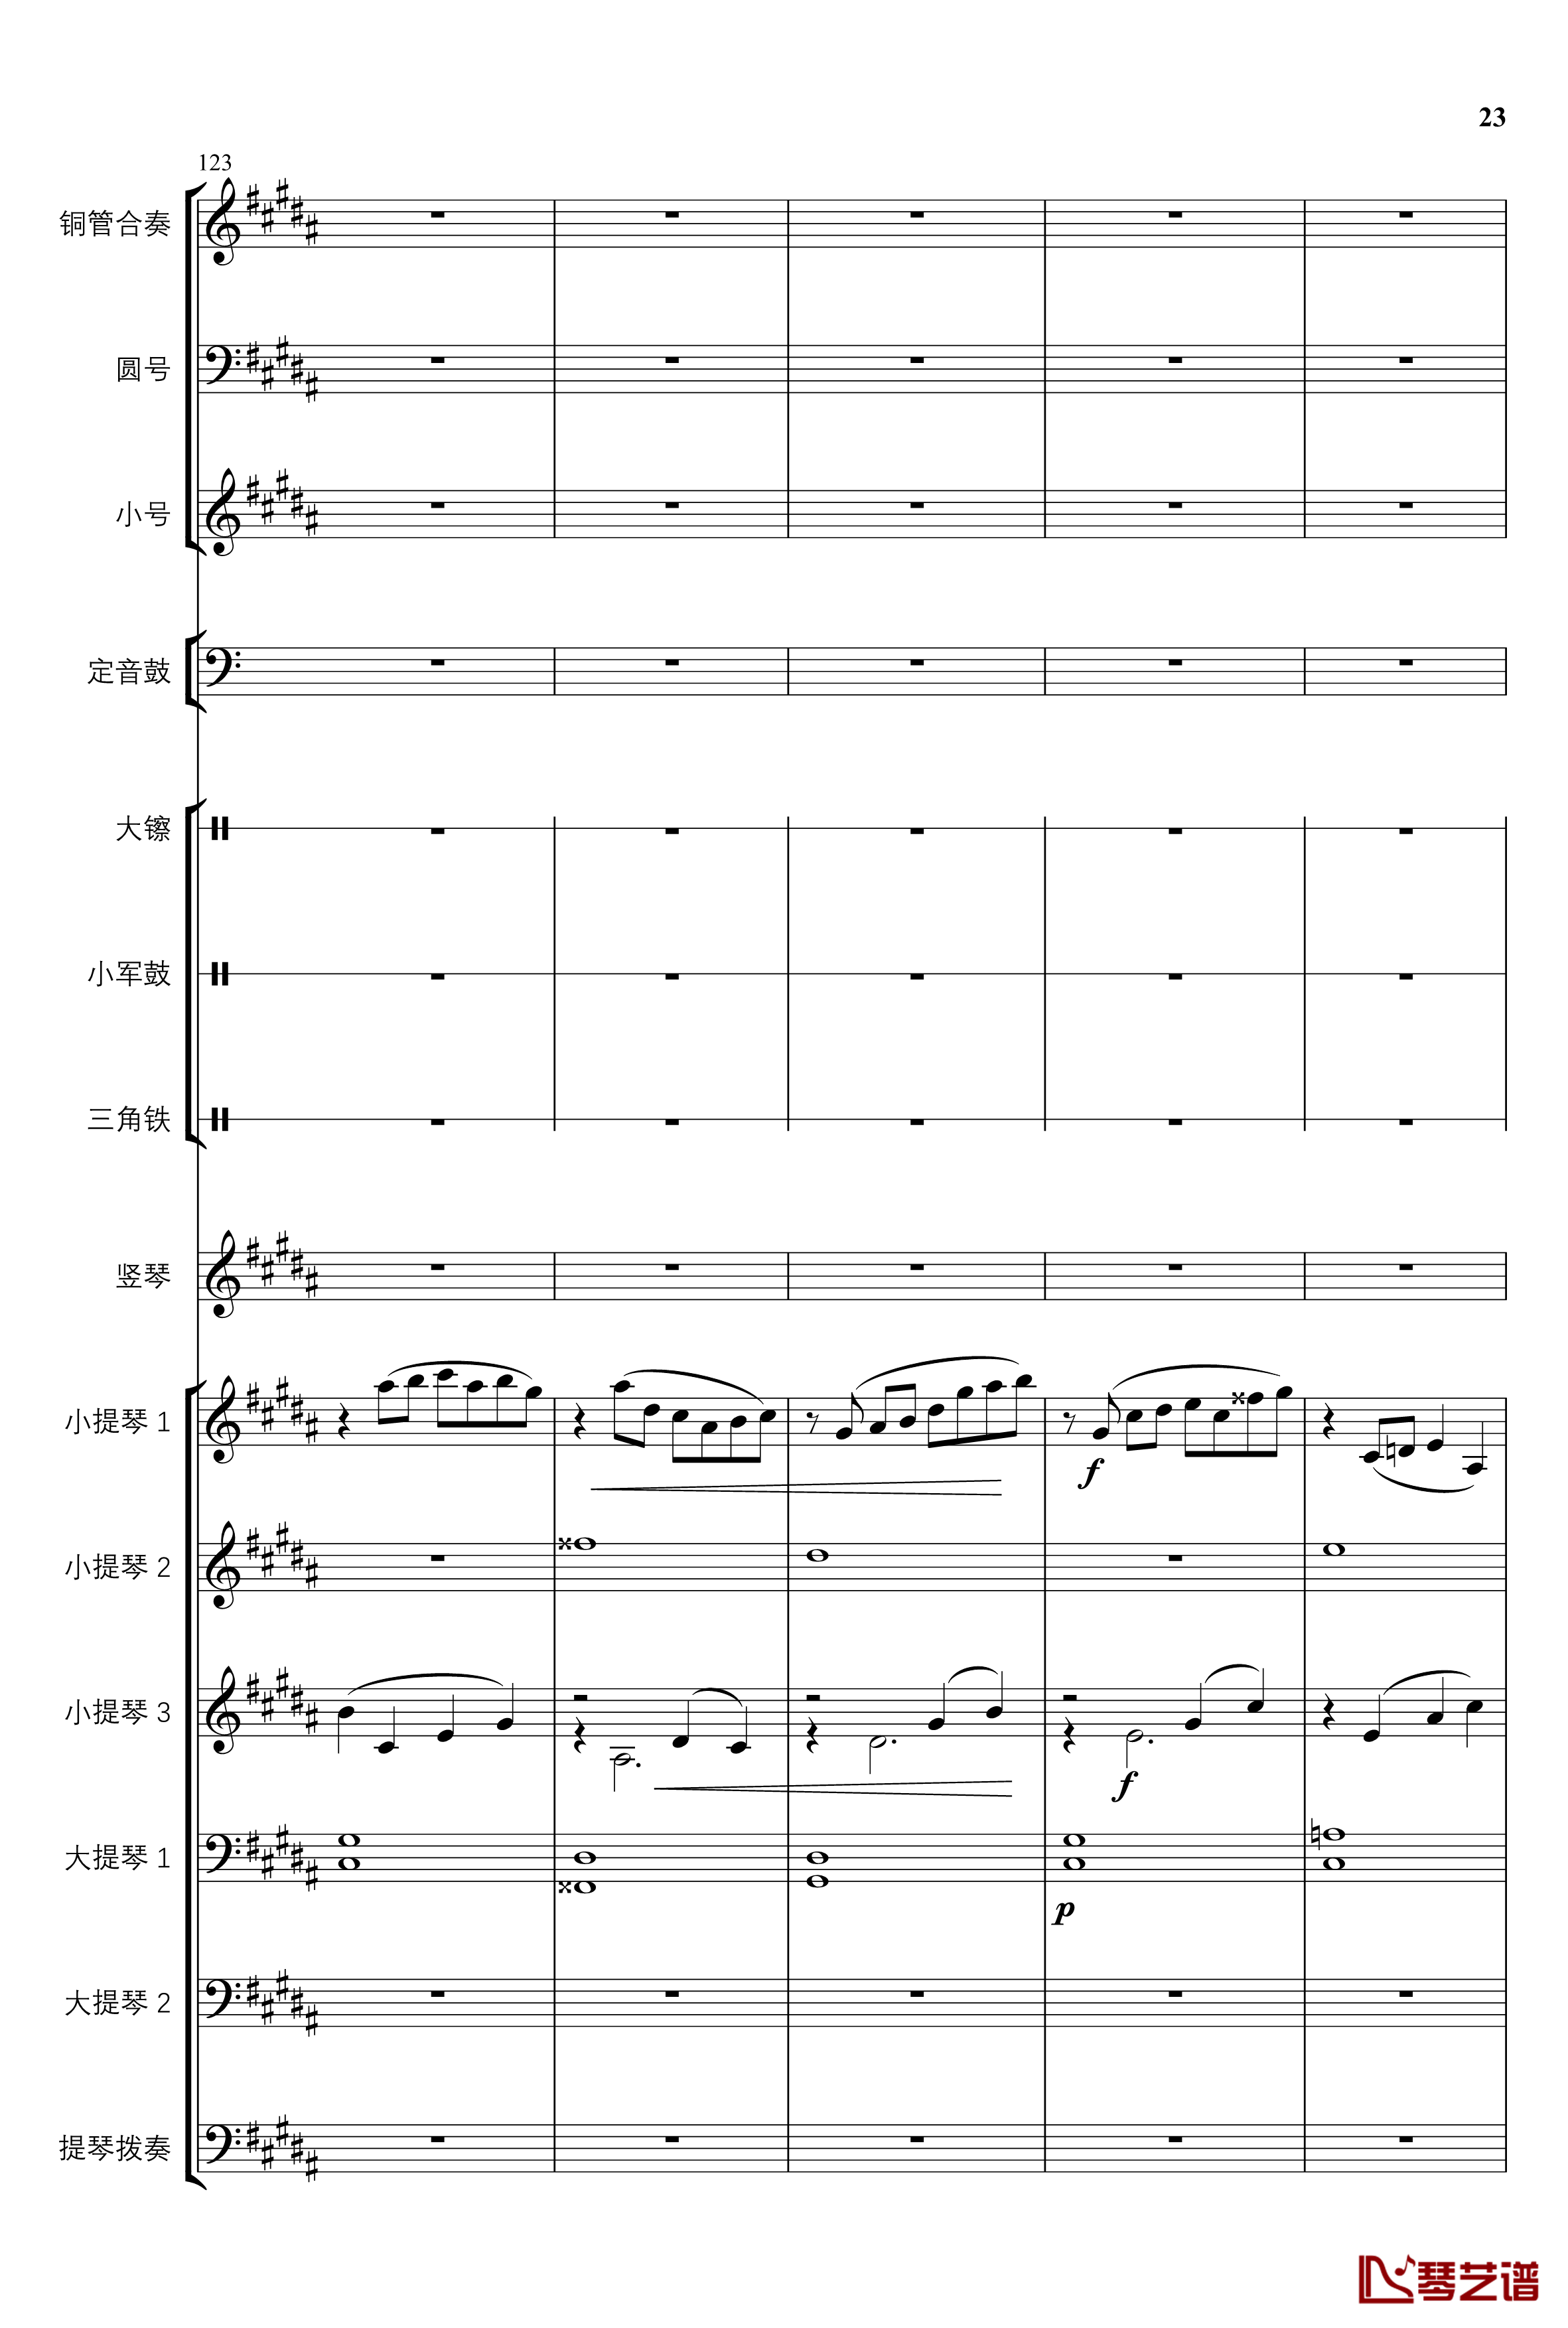 2013考试周的叙事曲钢琴谱-管弦乐重编曲版-江畔新绿23